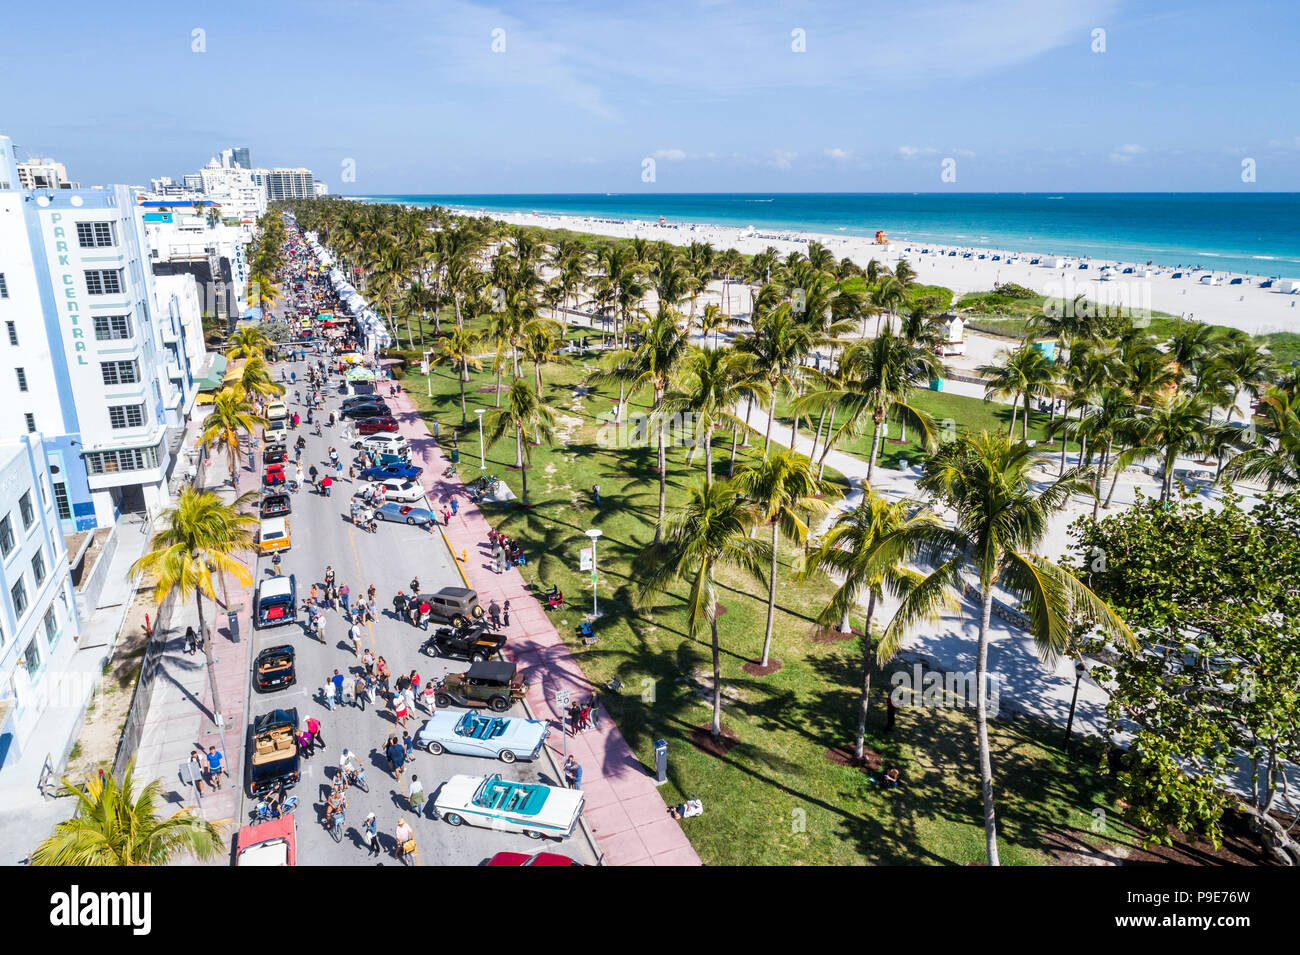 Miami Beach Florida, Ocean Drive, hôtels Lummus Park, exposition de voitures anciennes classiques, vue aérienne de l'océan Atlantique, Banque D'Images